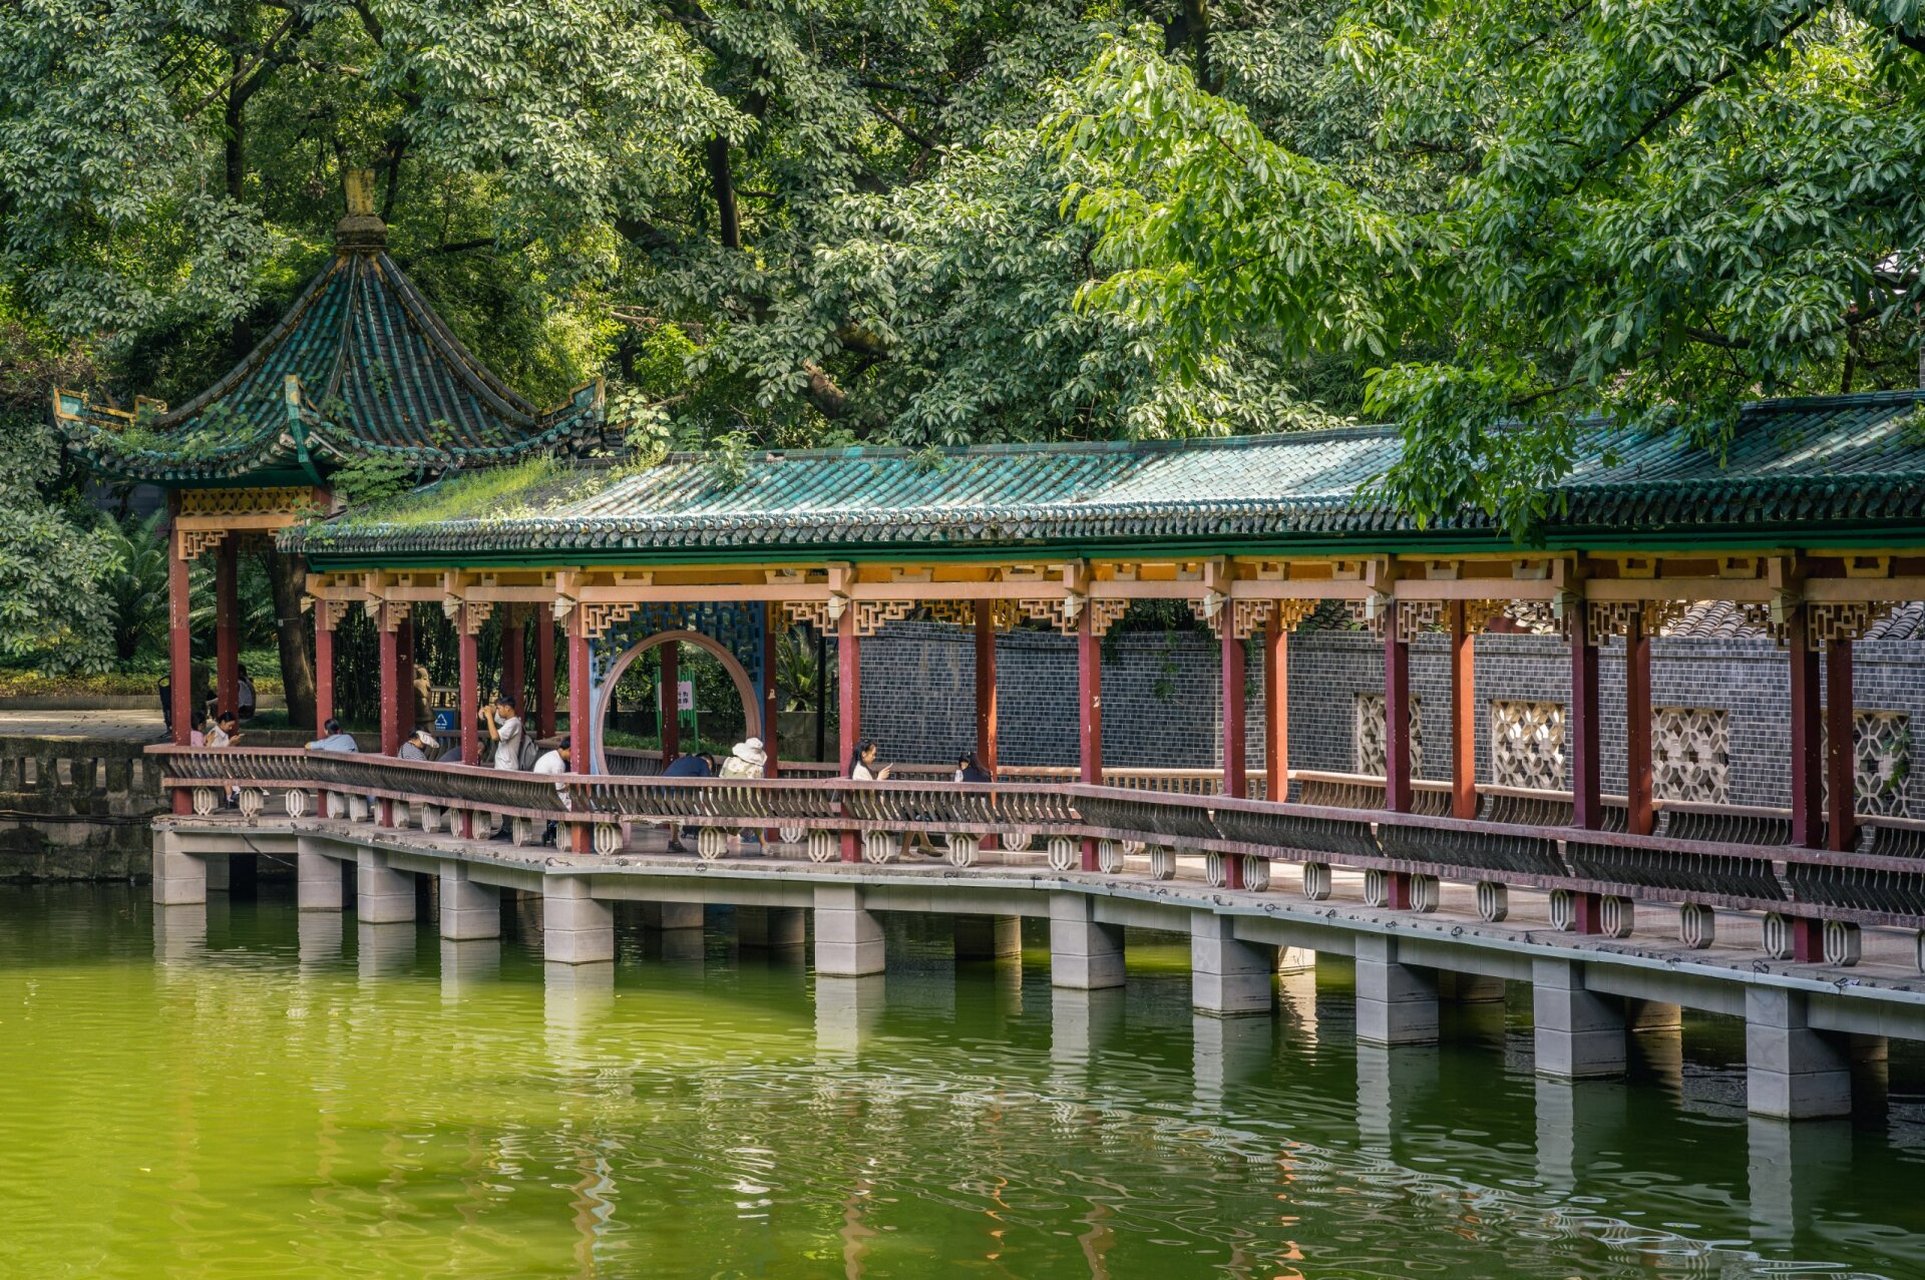 古风韵——鹅岭公园 这里是重庆市渝中区鹅岭公园!